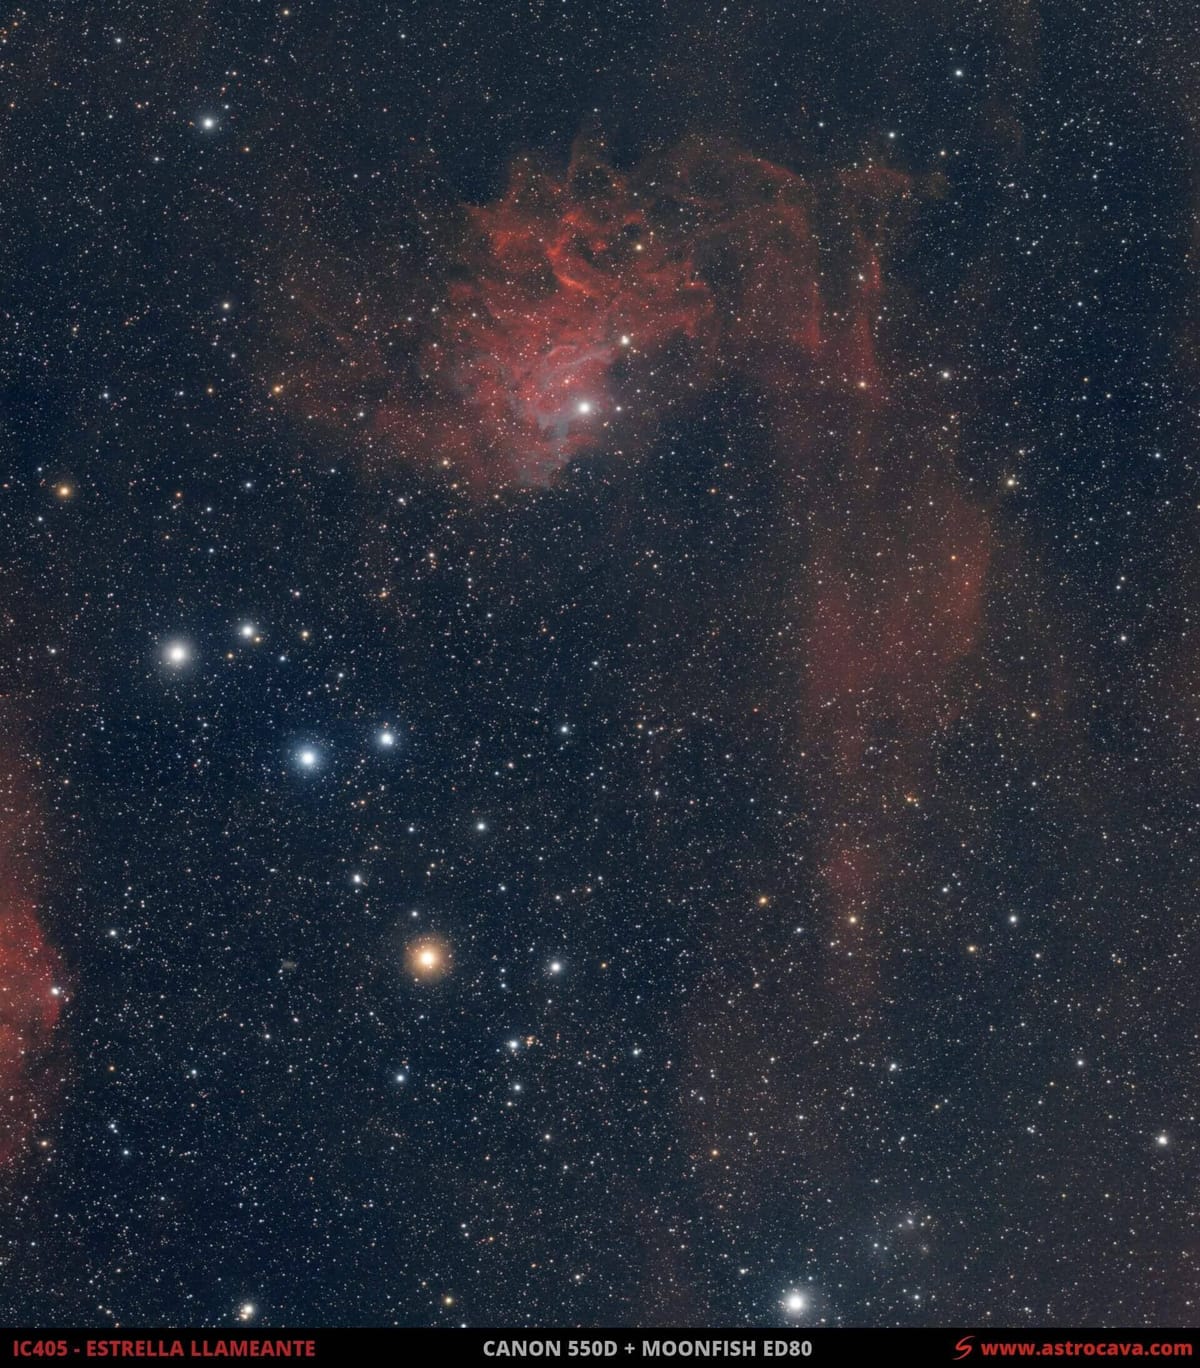 La Nebulosa de la Estrella Llameante - IC405